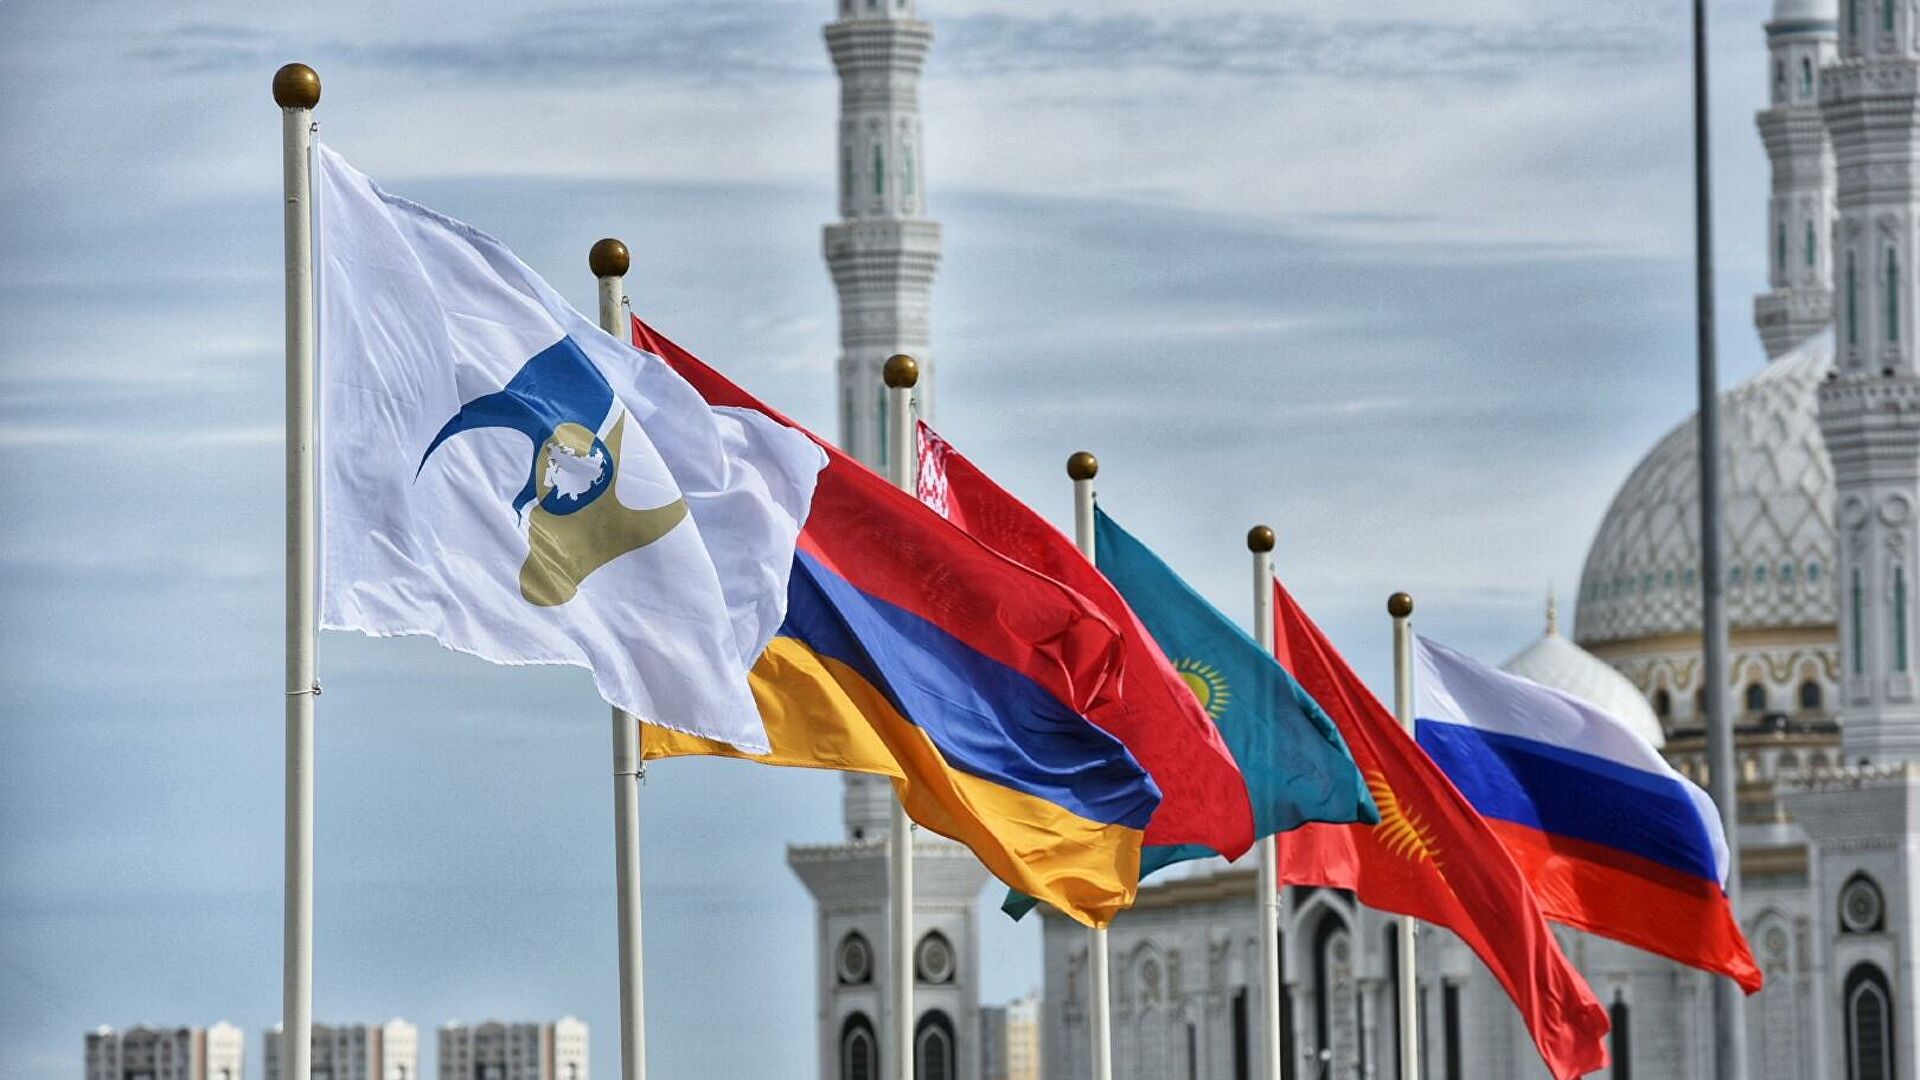 Հայաստանը Ալմա-Աթայում կմասնակցի Եվրասիական միջկառավարական խորհրդի նիստին